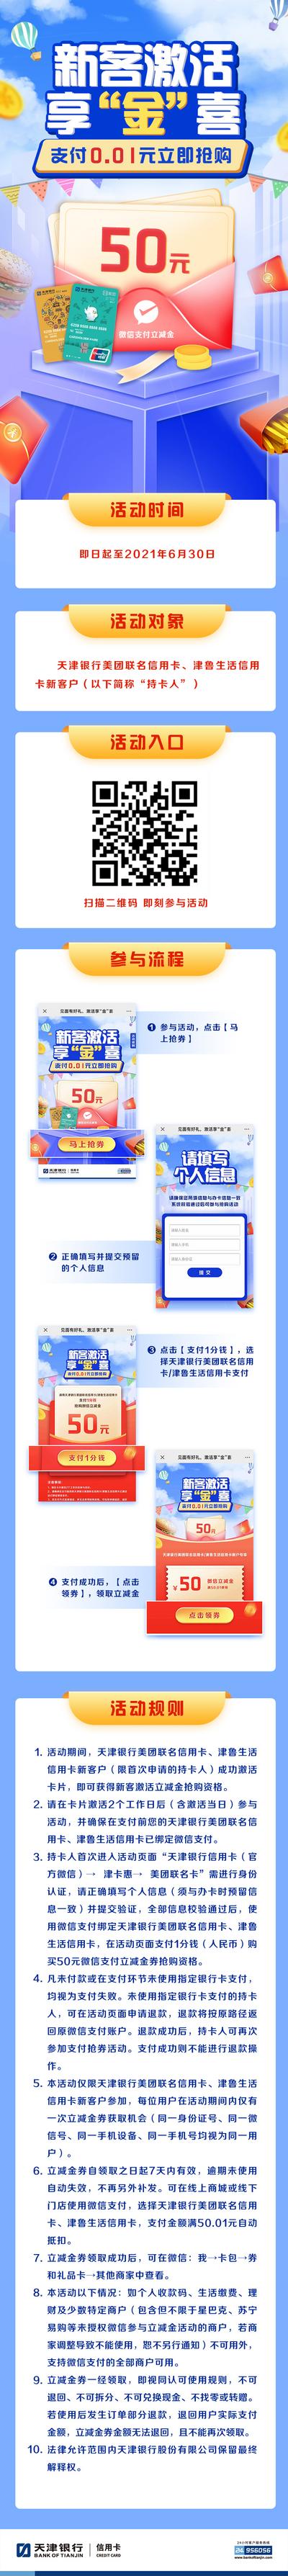 南门网 专题设计 长图 银行卡 新客 优惠 红包 流程 蓝色